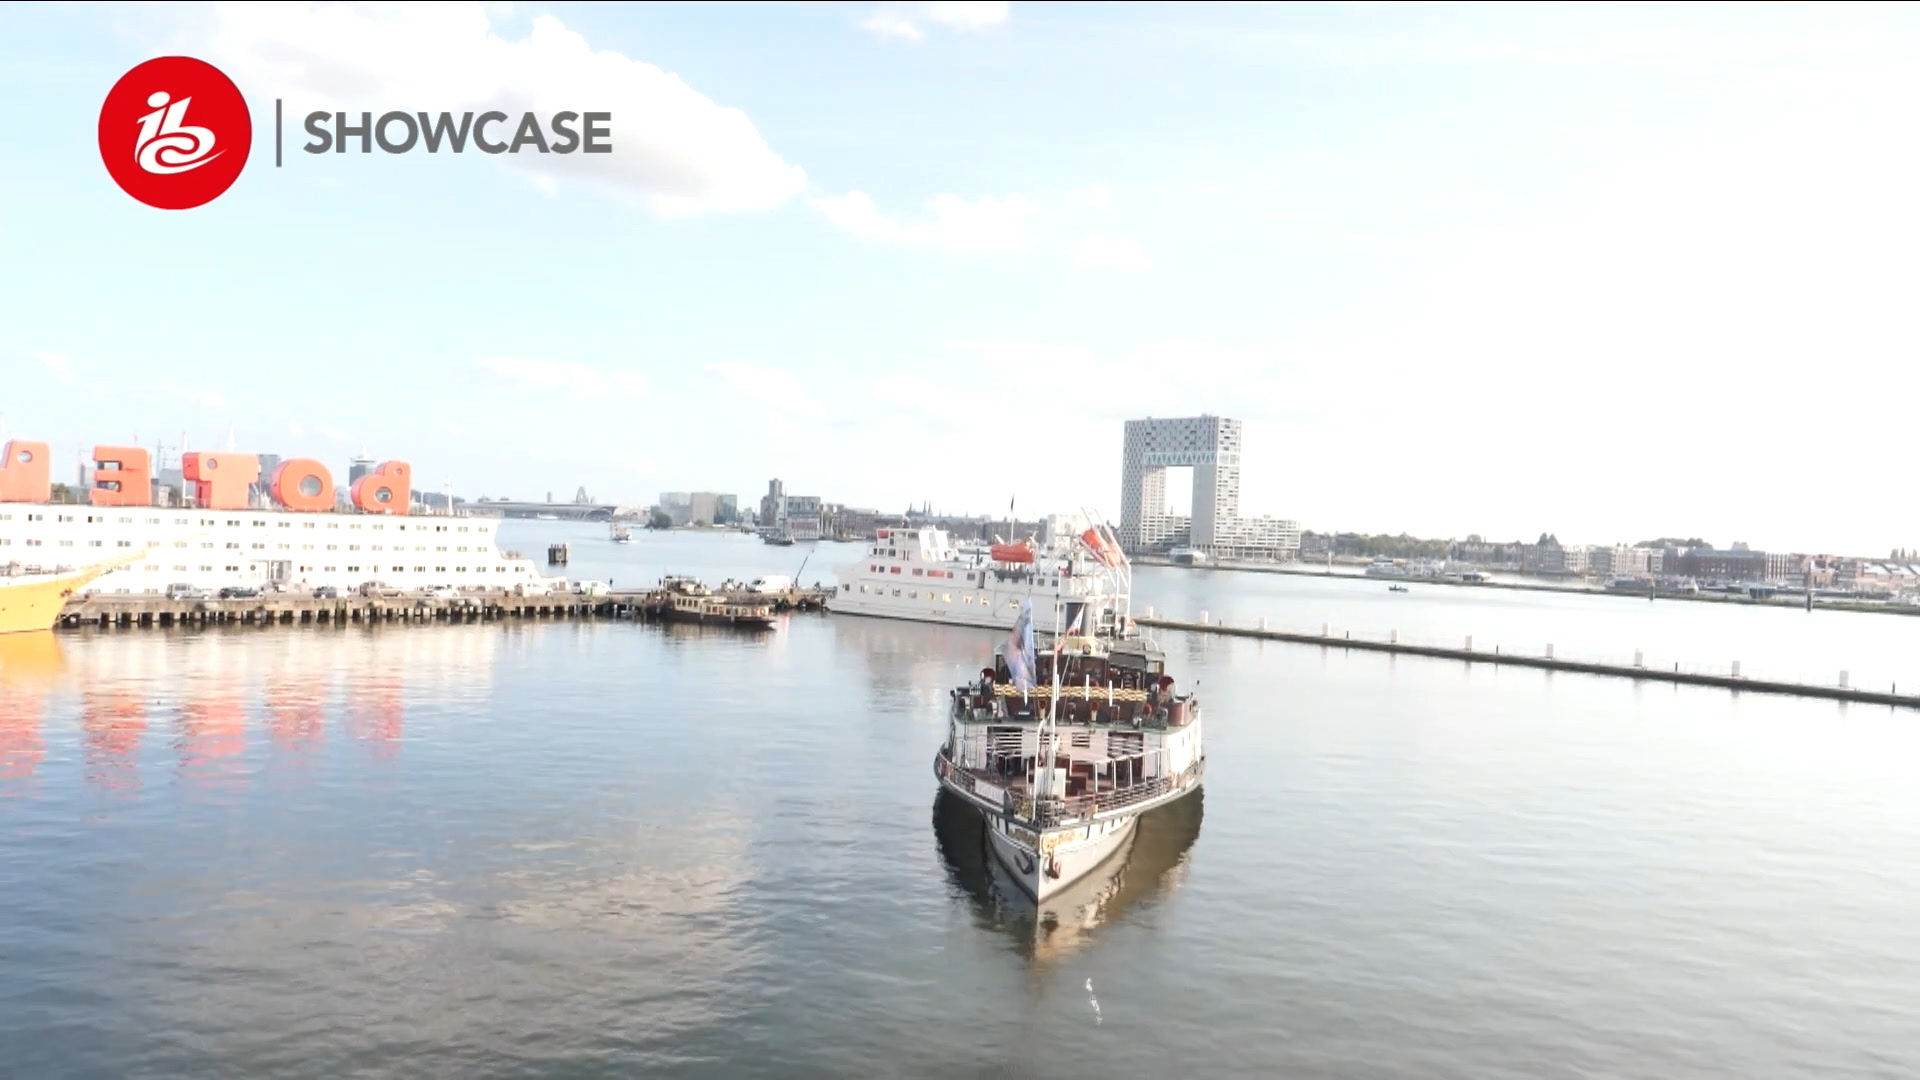 Signale von einem Boot in einem Amsterdamer Kanal wurden über 5G an eine zentrale Stelle in London übertragen